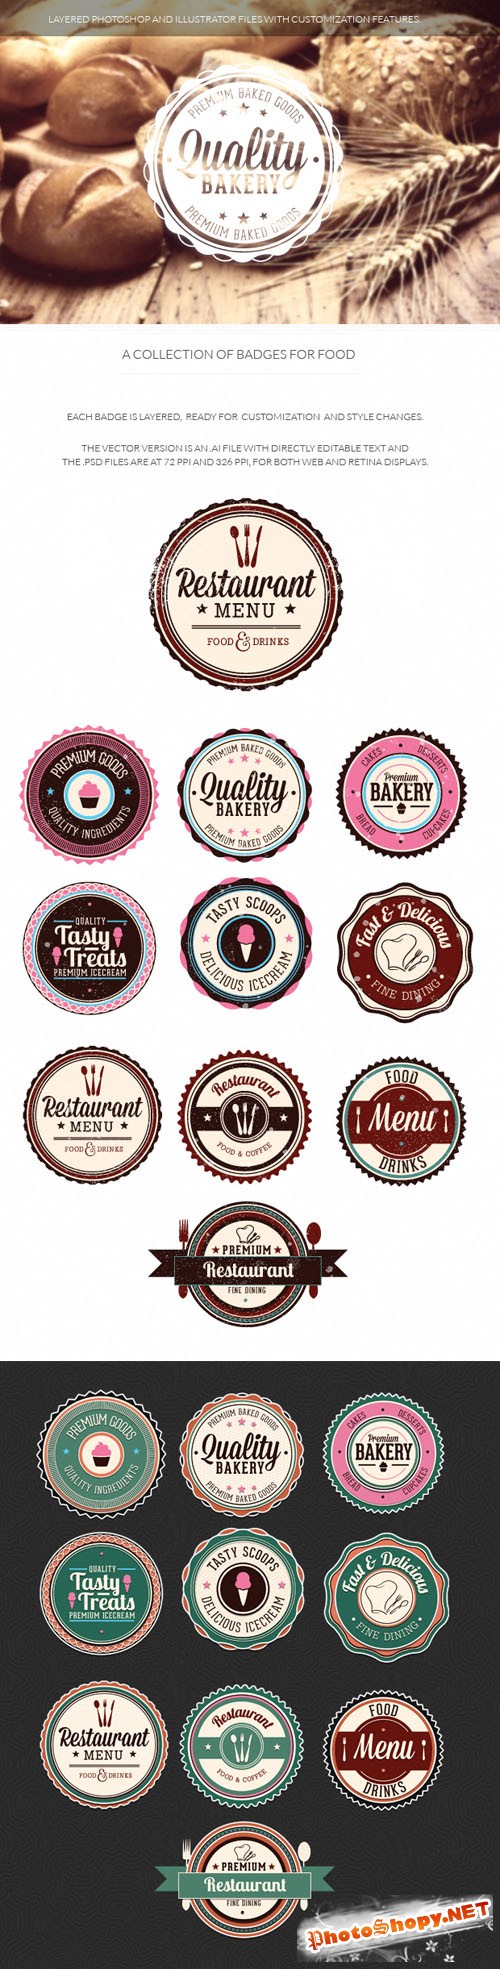 Food Badges Vector Elements Set